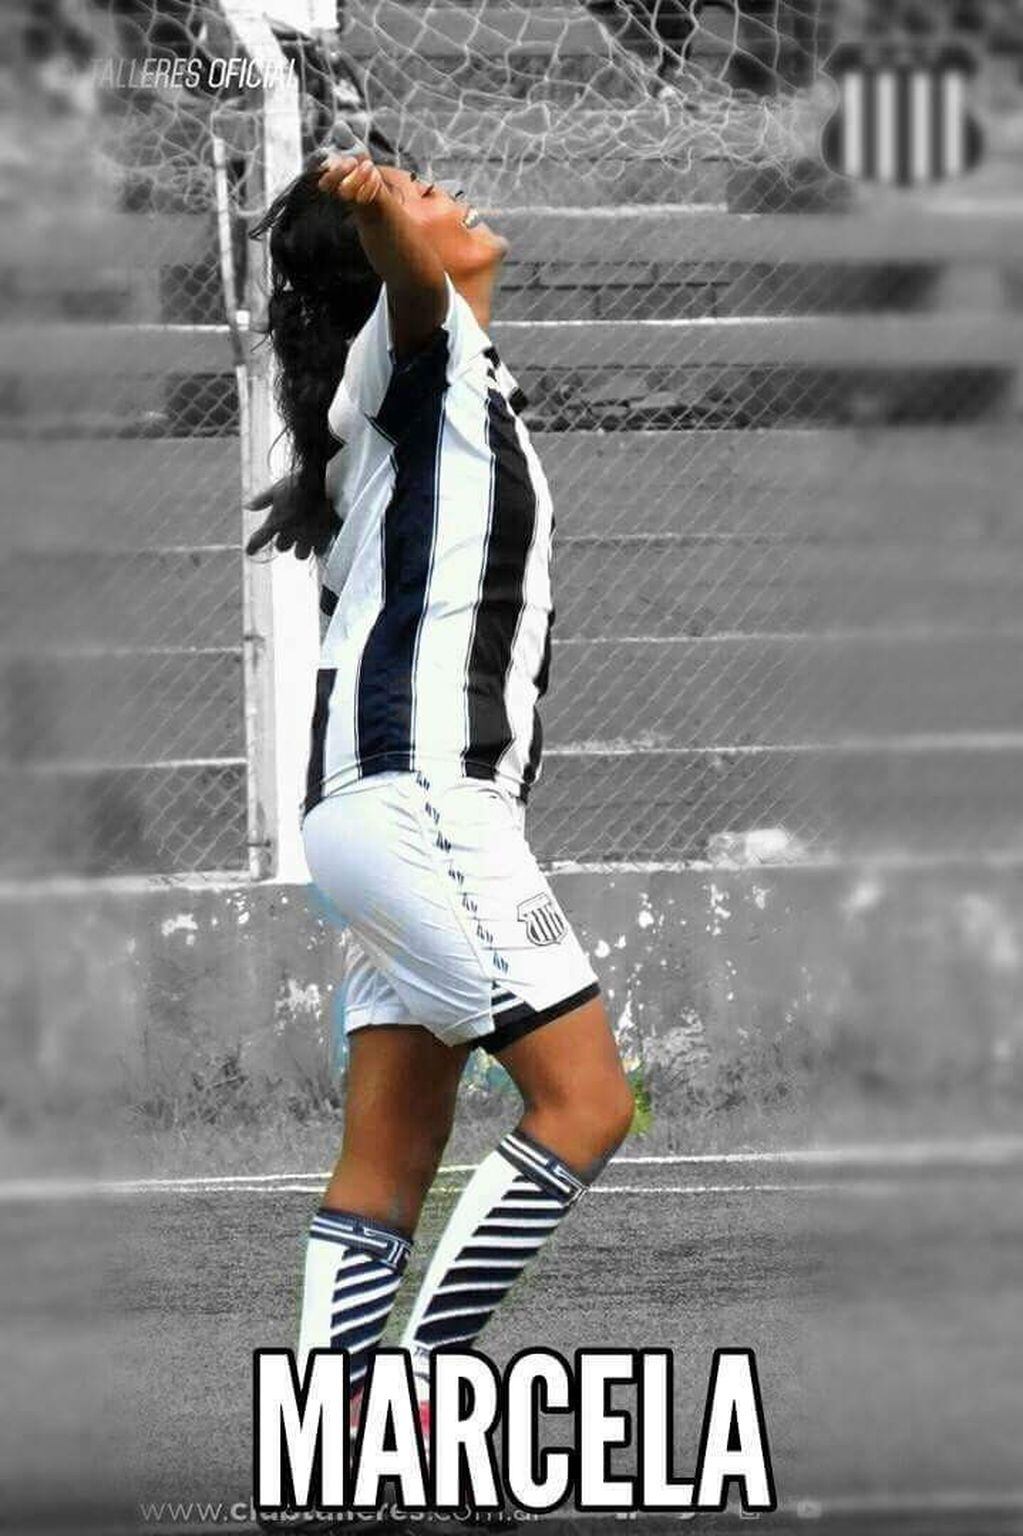 Marcela Castaño con los brazos en alto festejando un gol para Talleres: una imagen que se repite cuando juegan las chicas por el torneo de la Liga Cordobesa.